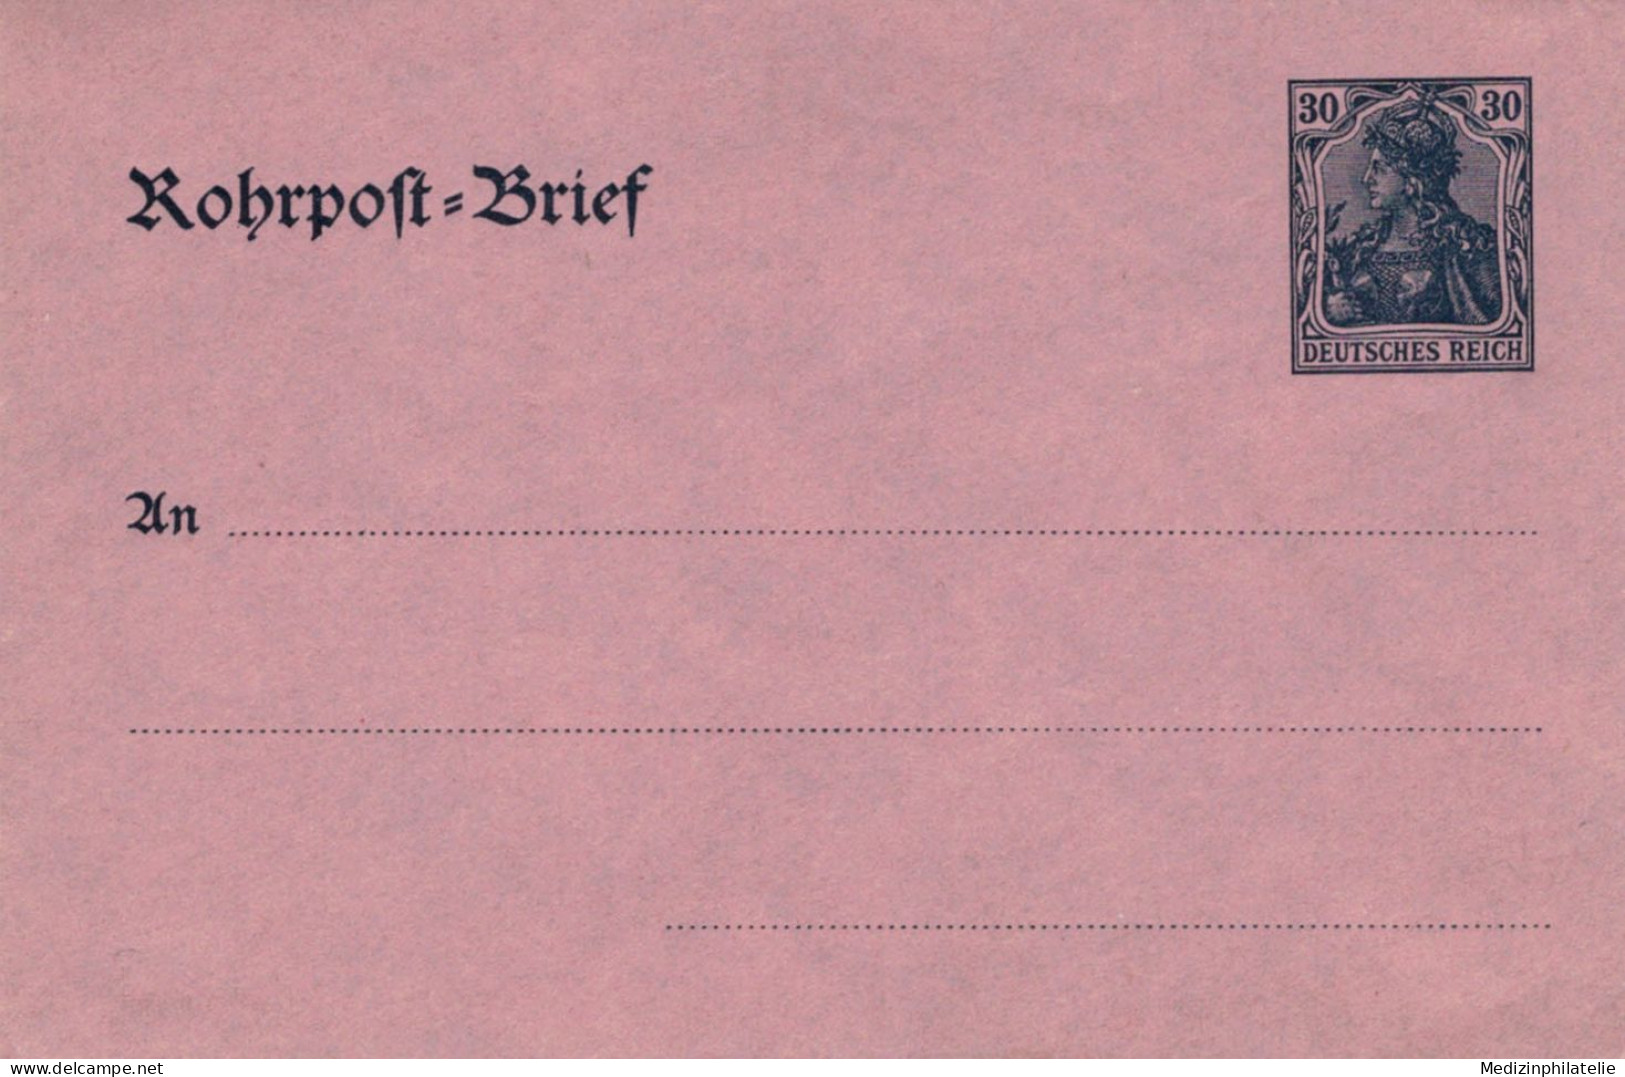 Rohrpost-Brief 30 Pf. Germania Glattes Papier - Ungebraucht - Enveloppes